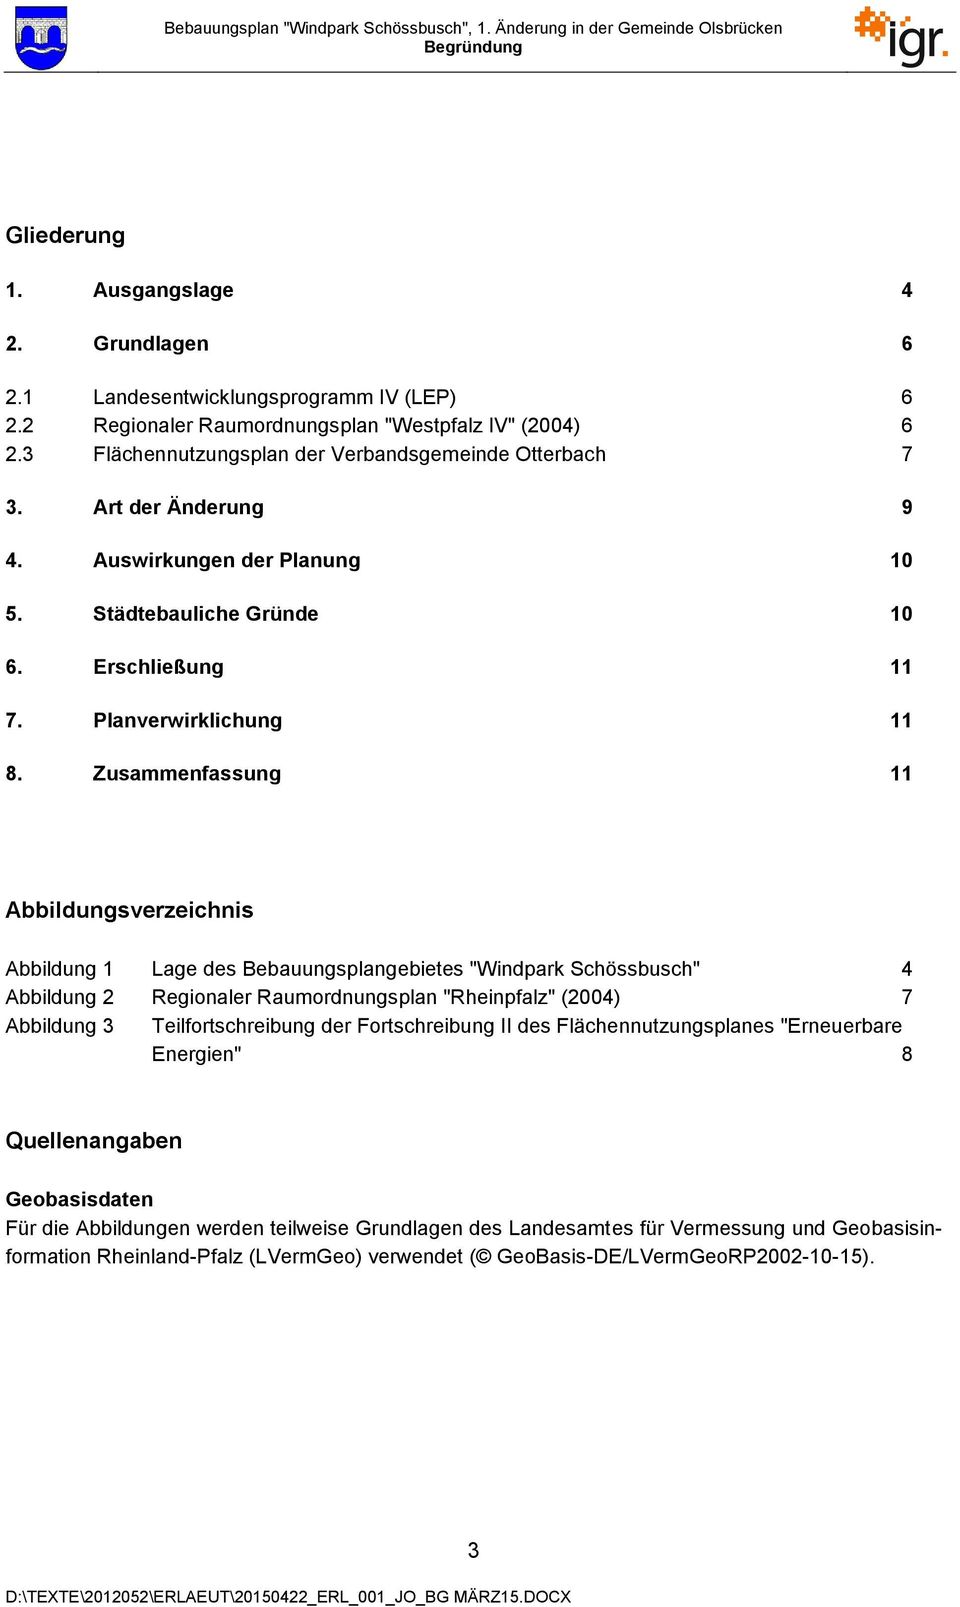 Zusammenfassung 11 Abbildungsverzeichnis Abbildung 1 Lage des Bebauungsplangebietes "Windpark Schössbusch" 4 Abbildung 2 Regionaler Raumordnungsplan "Rheinpfalz" (2004) 7 Abbildung 3